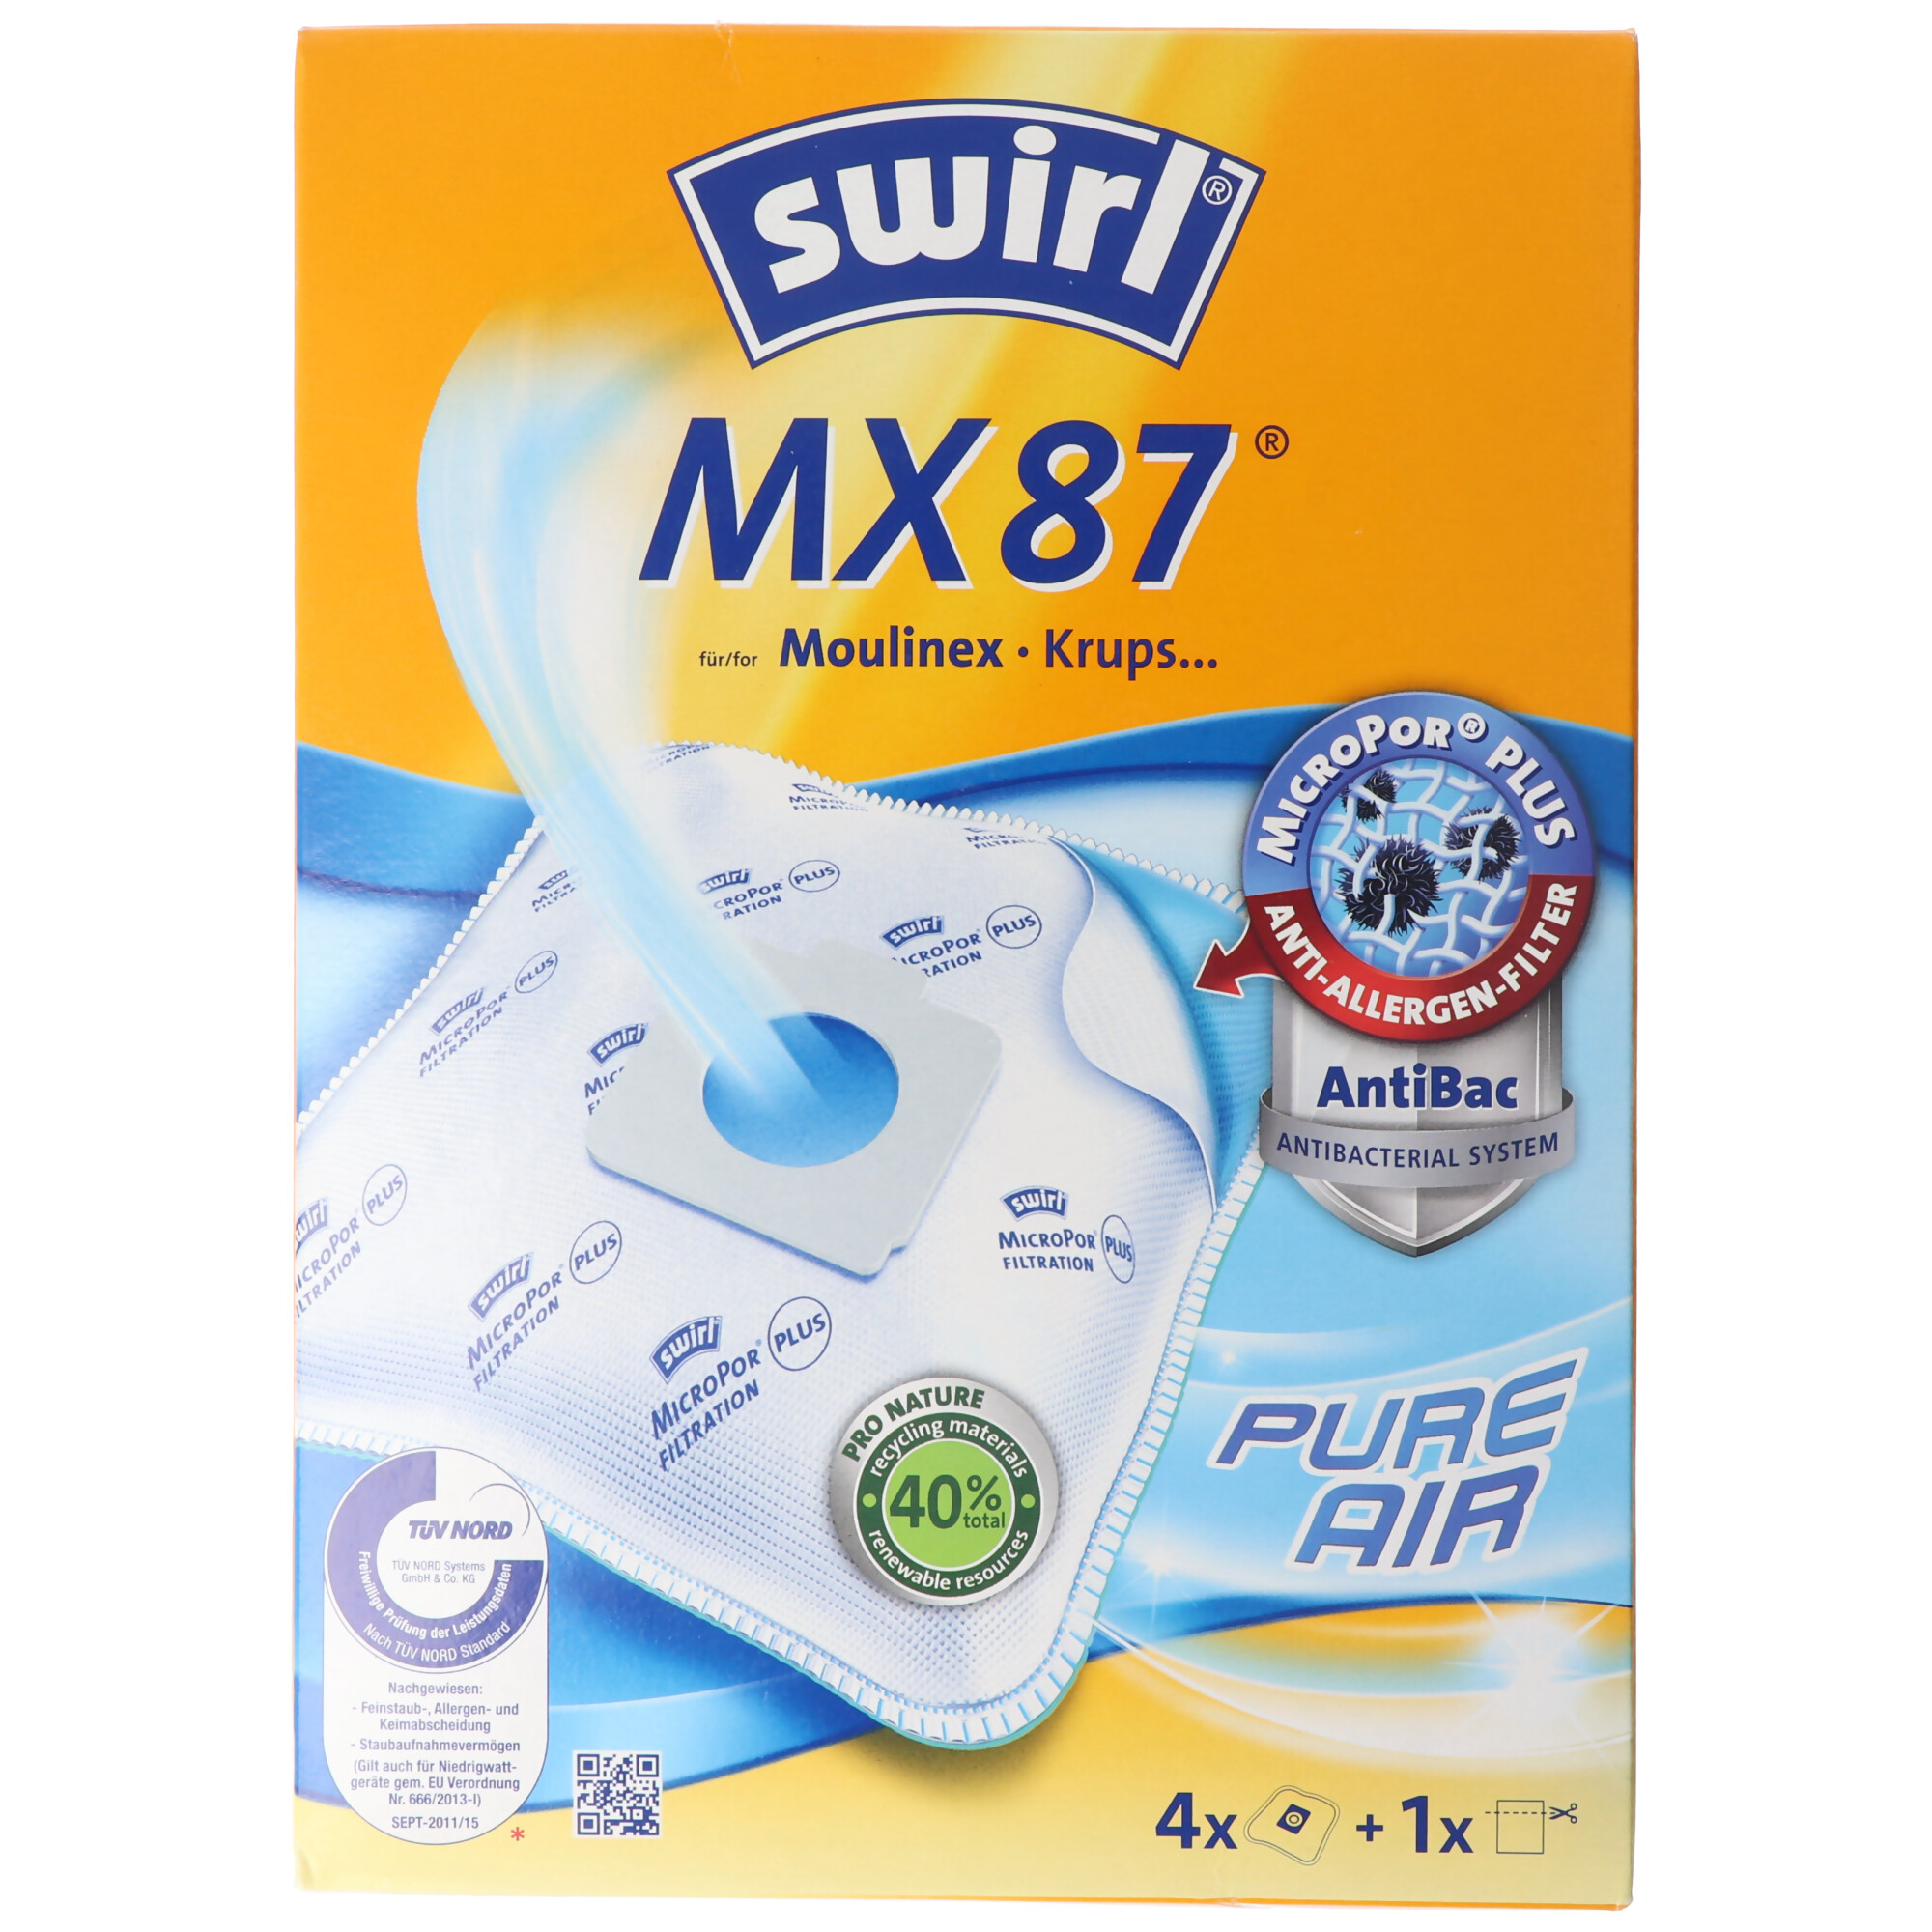 Swirl Staubsaugerbeutel MX87 MicroPor Plus für Moulinex und Krups Staubsauger